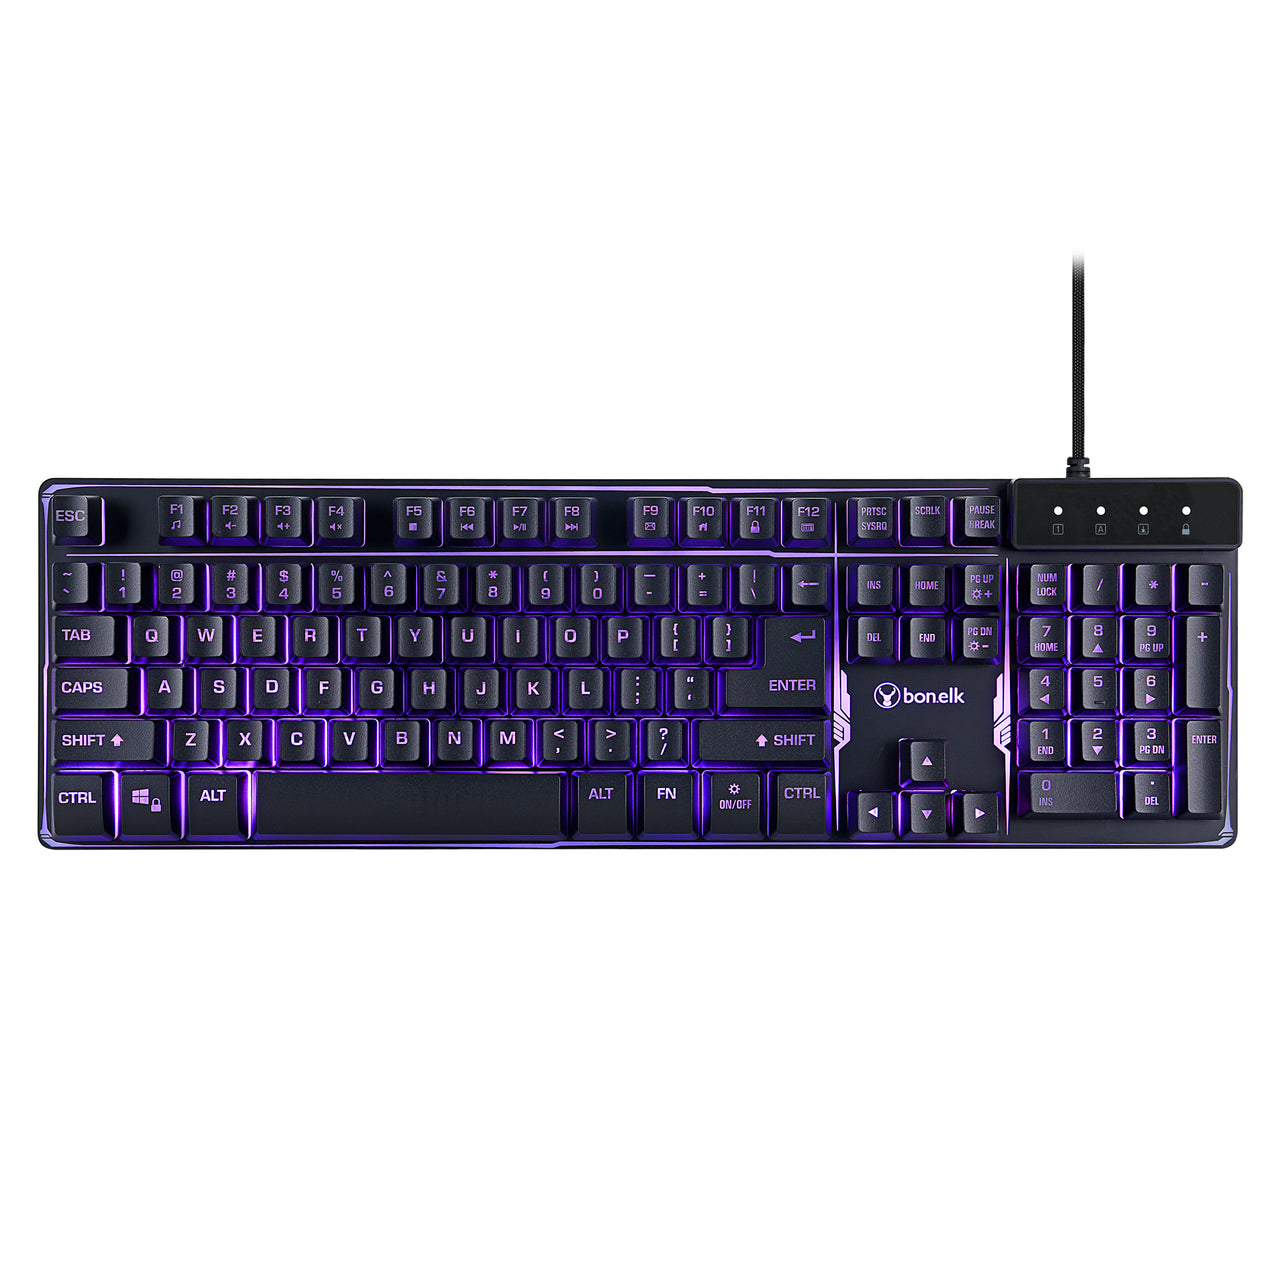 Bonelk K-308 Gaming LED Backlit Keyboard, USB, Full Size - Black